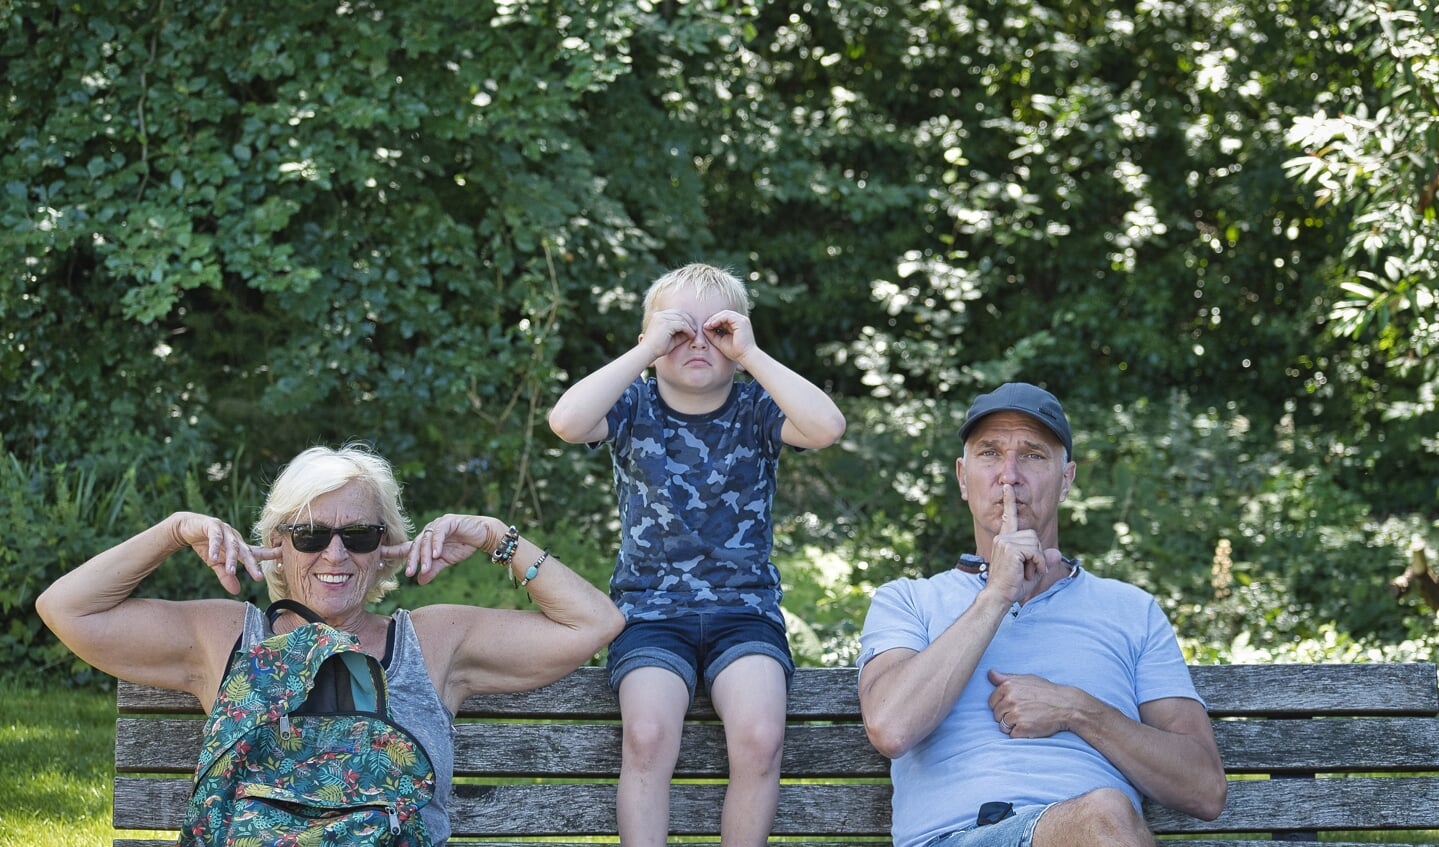 Donderdag 30 juli met kleinzoon een uitje gehad naar Ouwehands Dierenpark in Rhenen.
Op de bank uitgebeeld 'Horen…Zien….Zwijgen'.